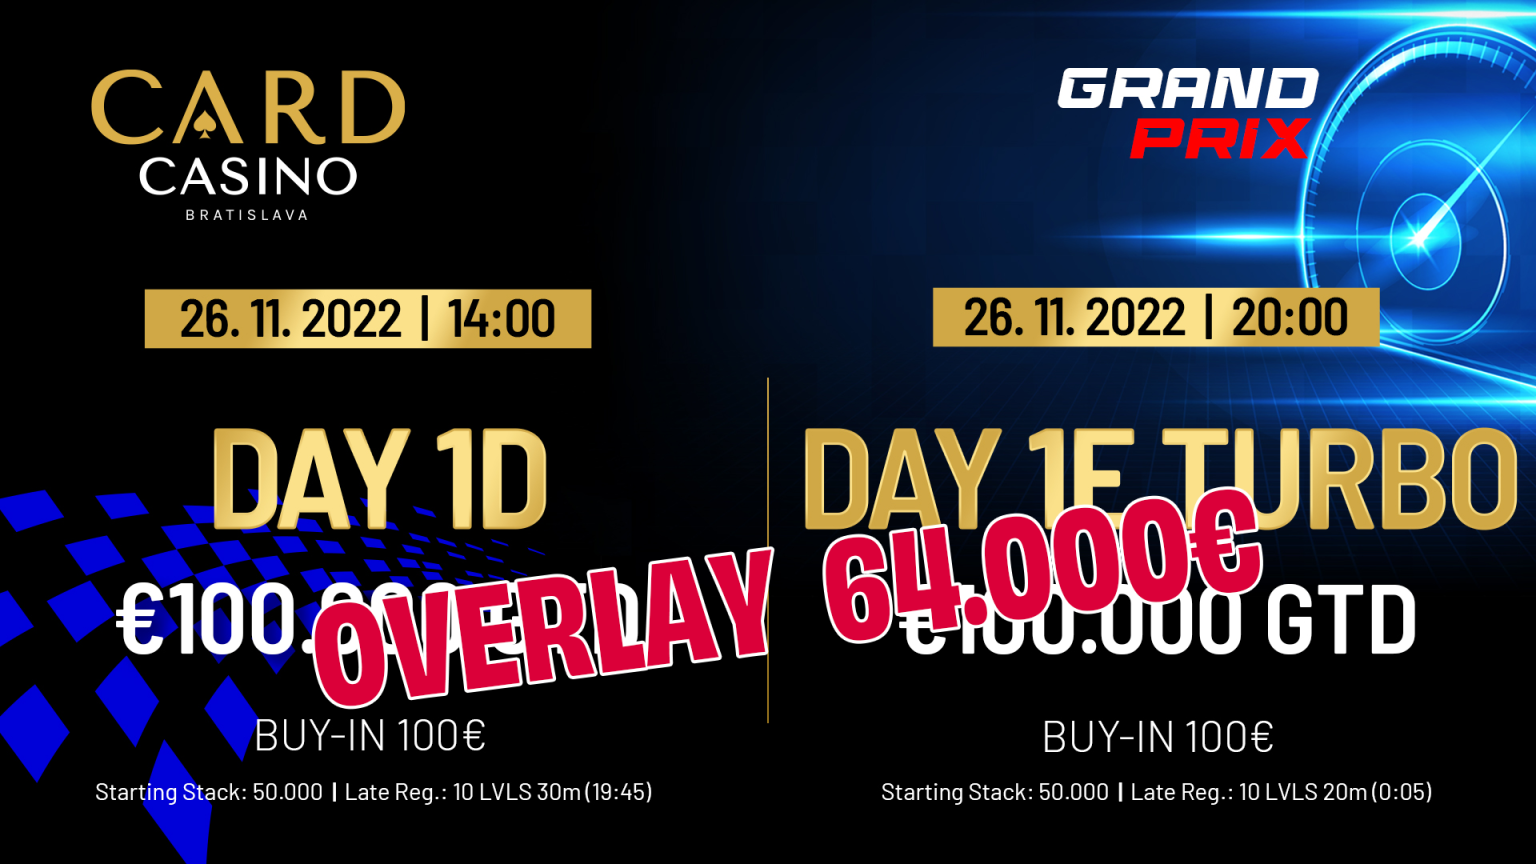 Die Woche des GRAND PRIX €100.000 GTD ist hier.